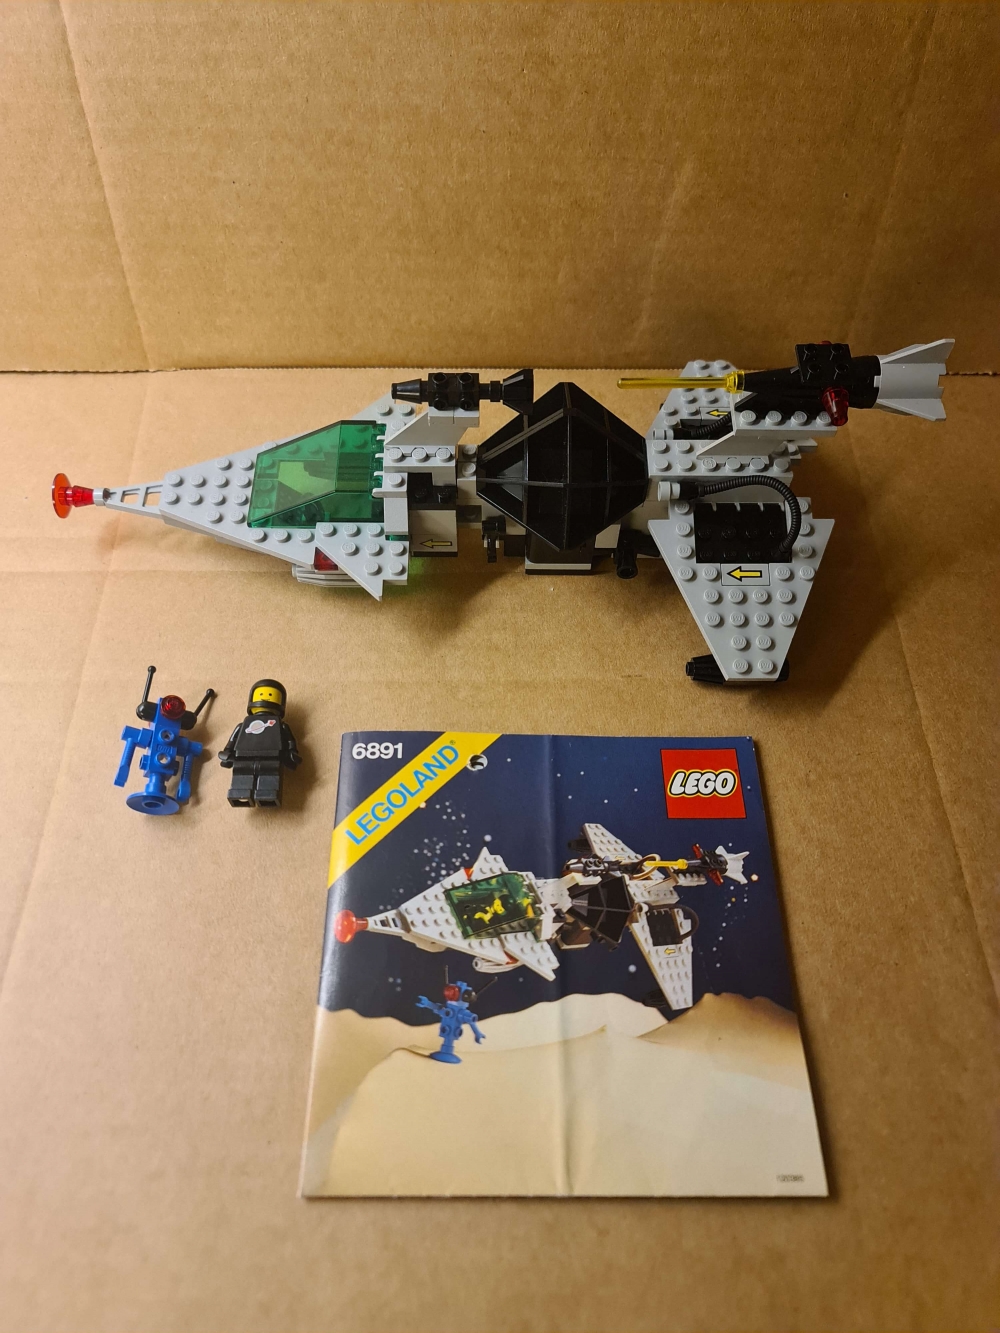 Sett 6891 fra Lego Classic Space serien.
Meget pent sett. 
Komplett med manual. Nydelige figurer.